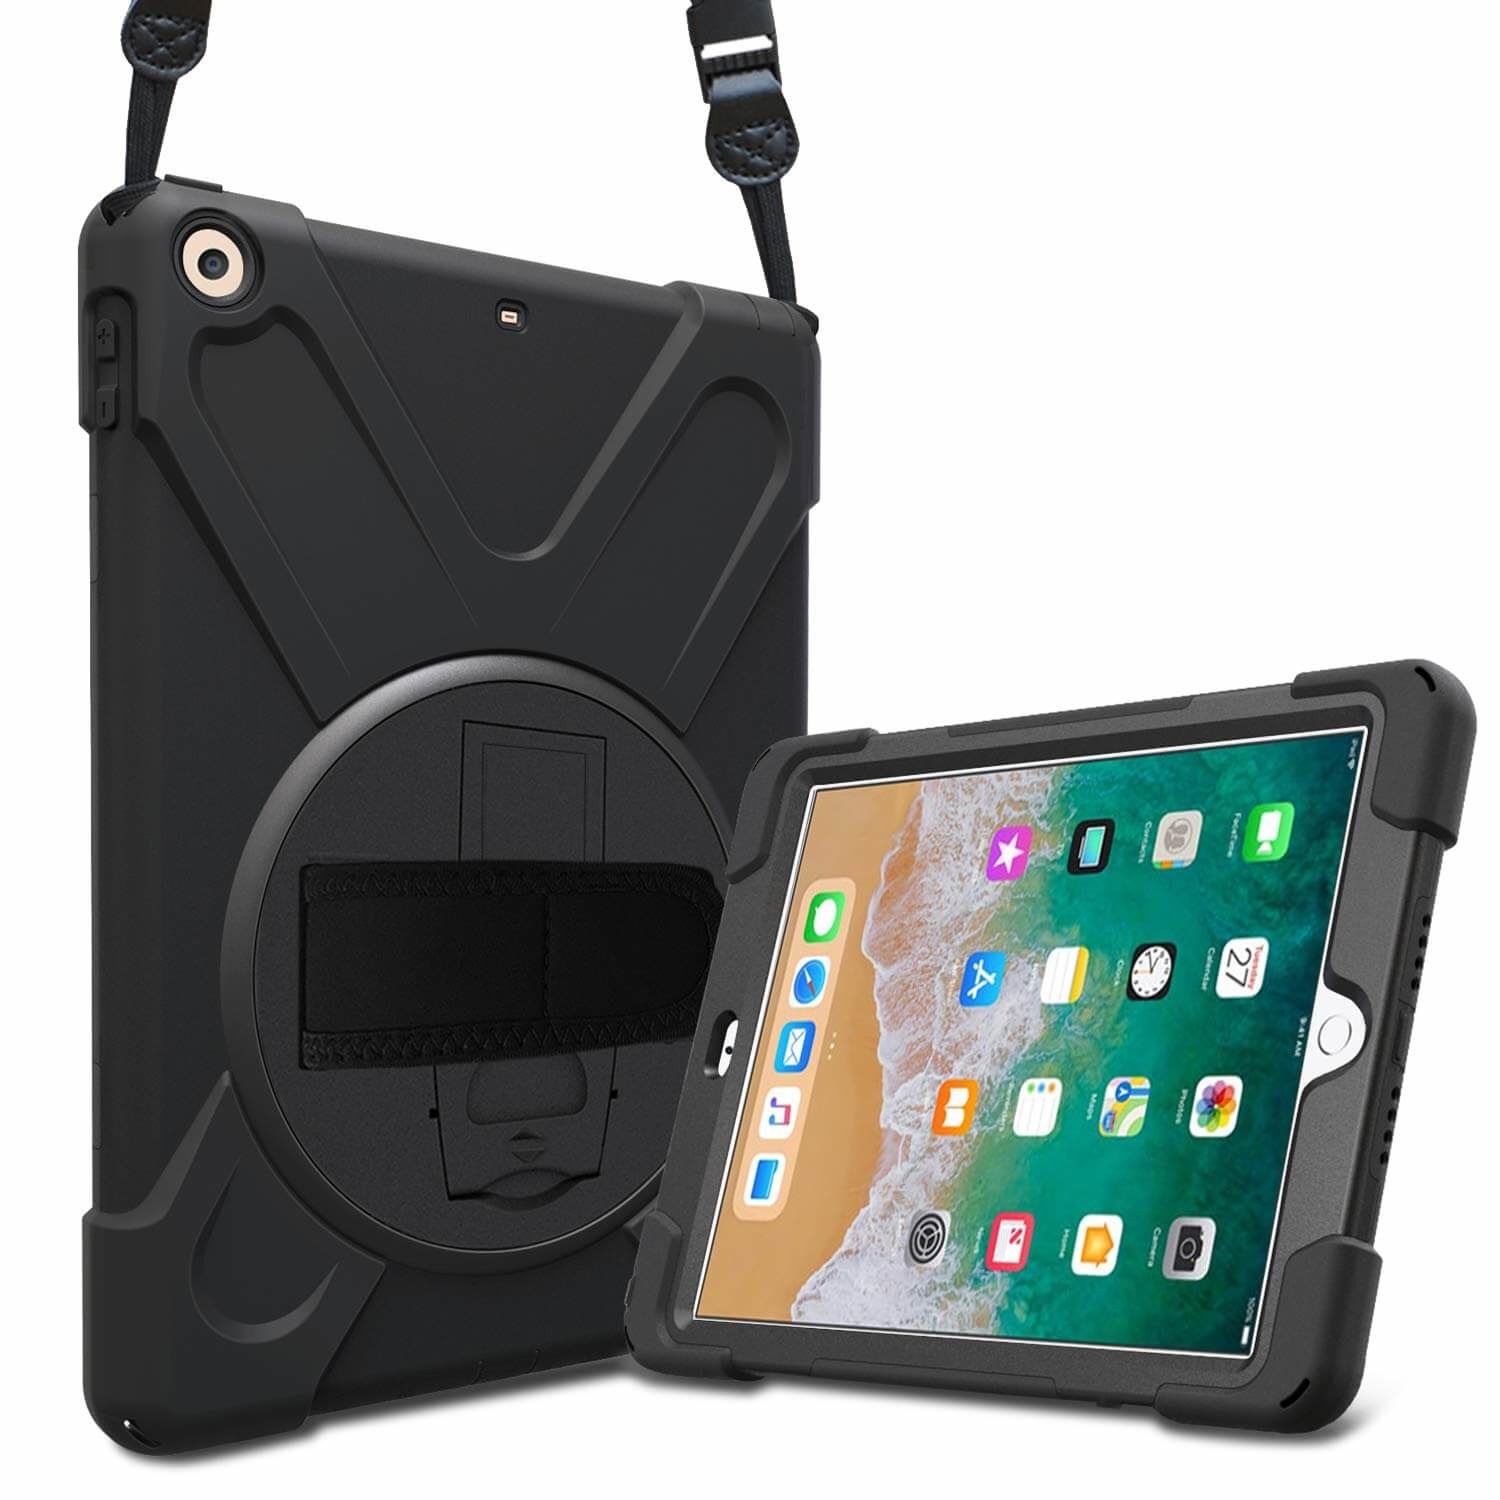 iPad Pro 10.5 Protector Hoes met handvat en schouderriem en standaard